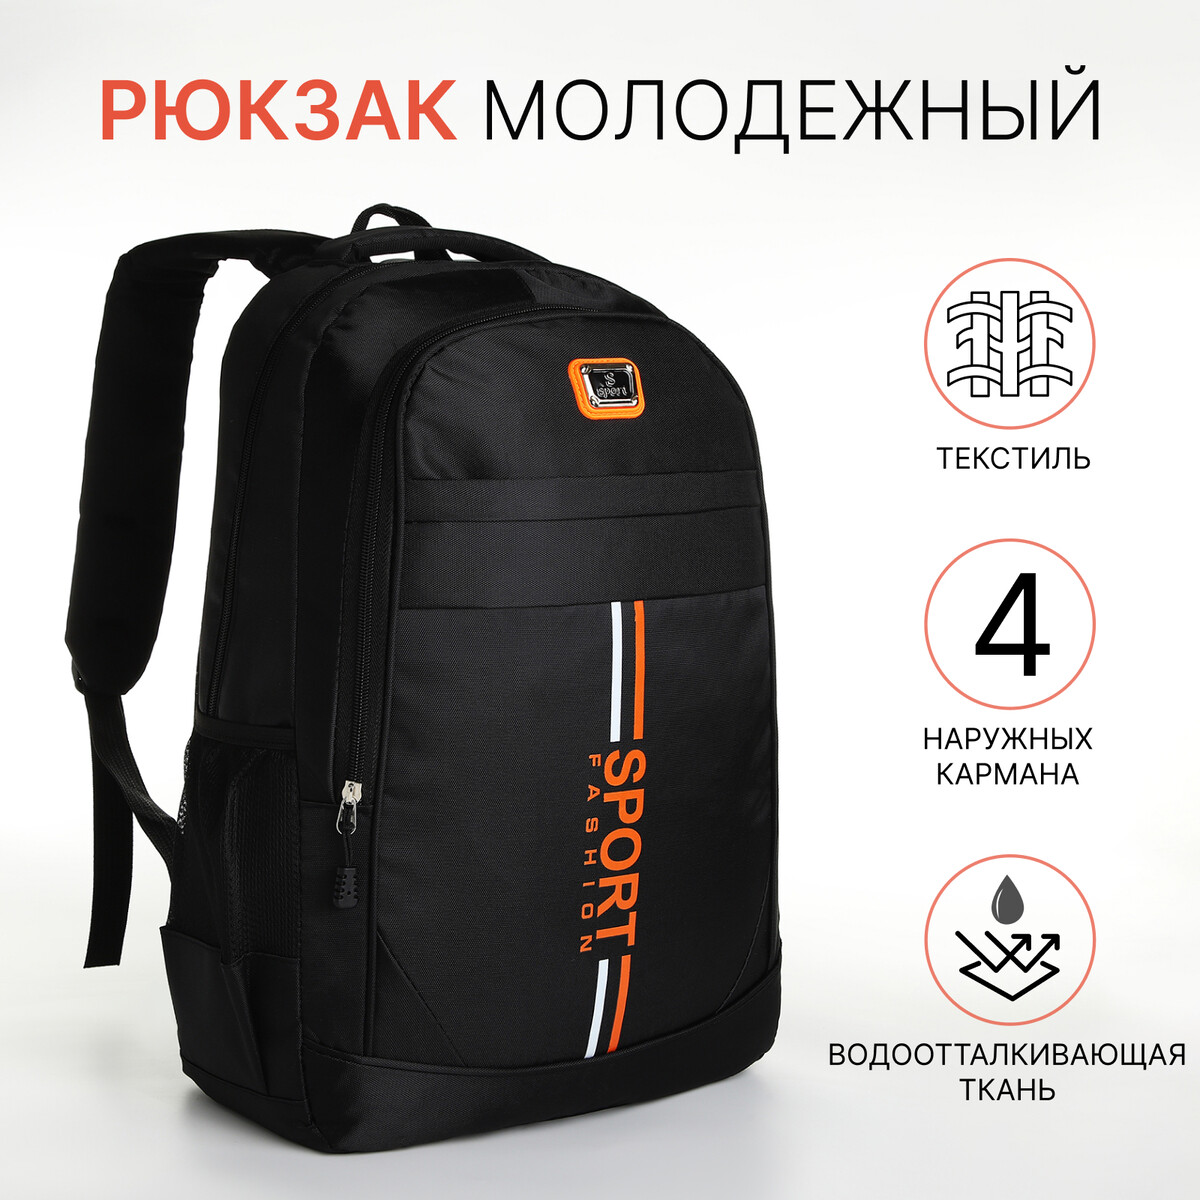 Рюкзак молодежный на молнии, 4 кармана, цвет черный/оранжевый рюкзак 31 45 15 см отд на молнии 4 н кармана оранжевый